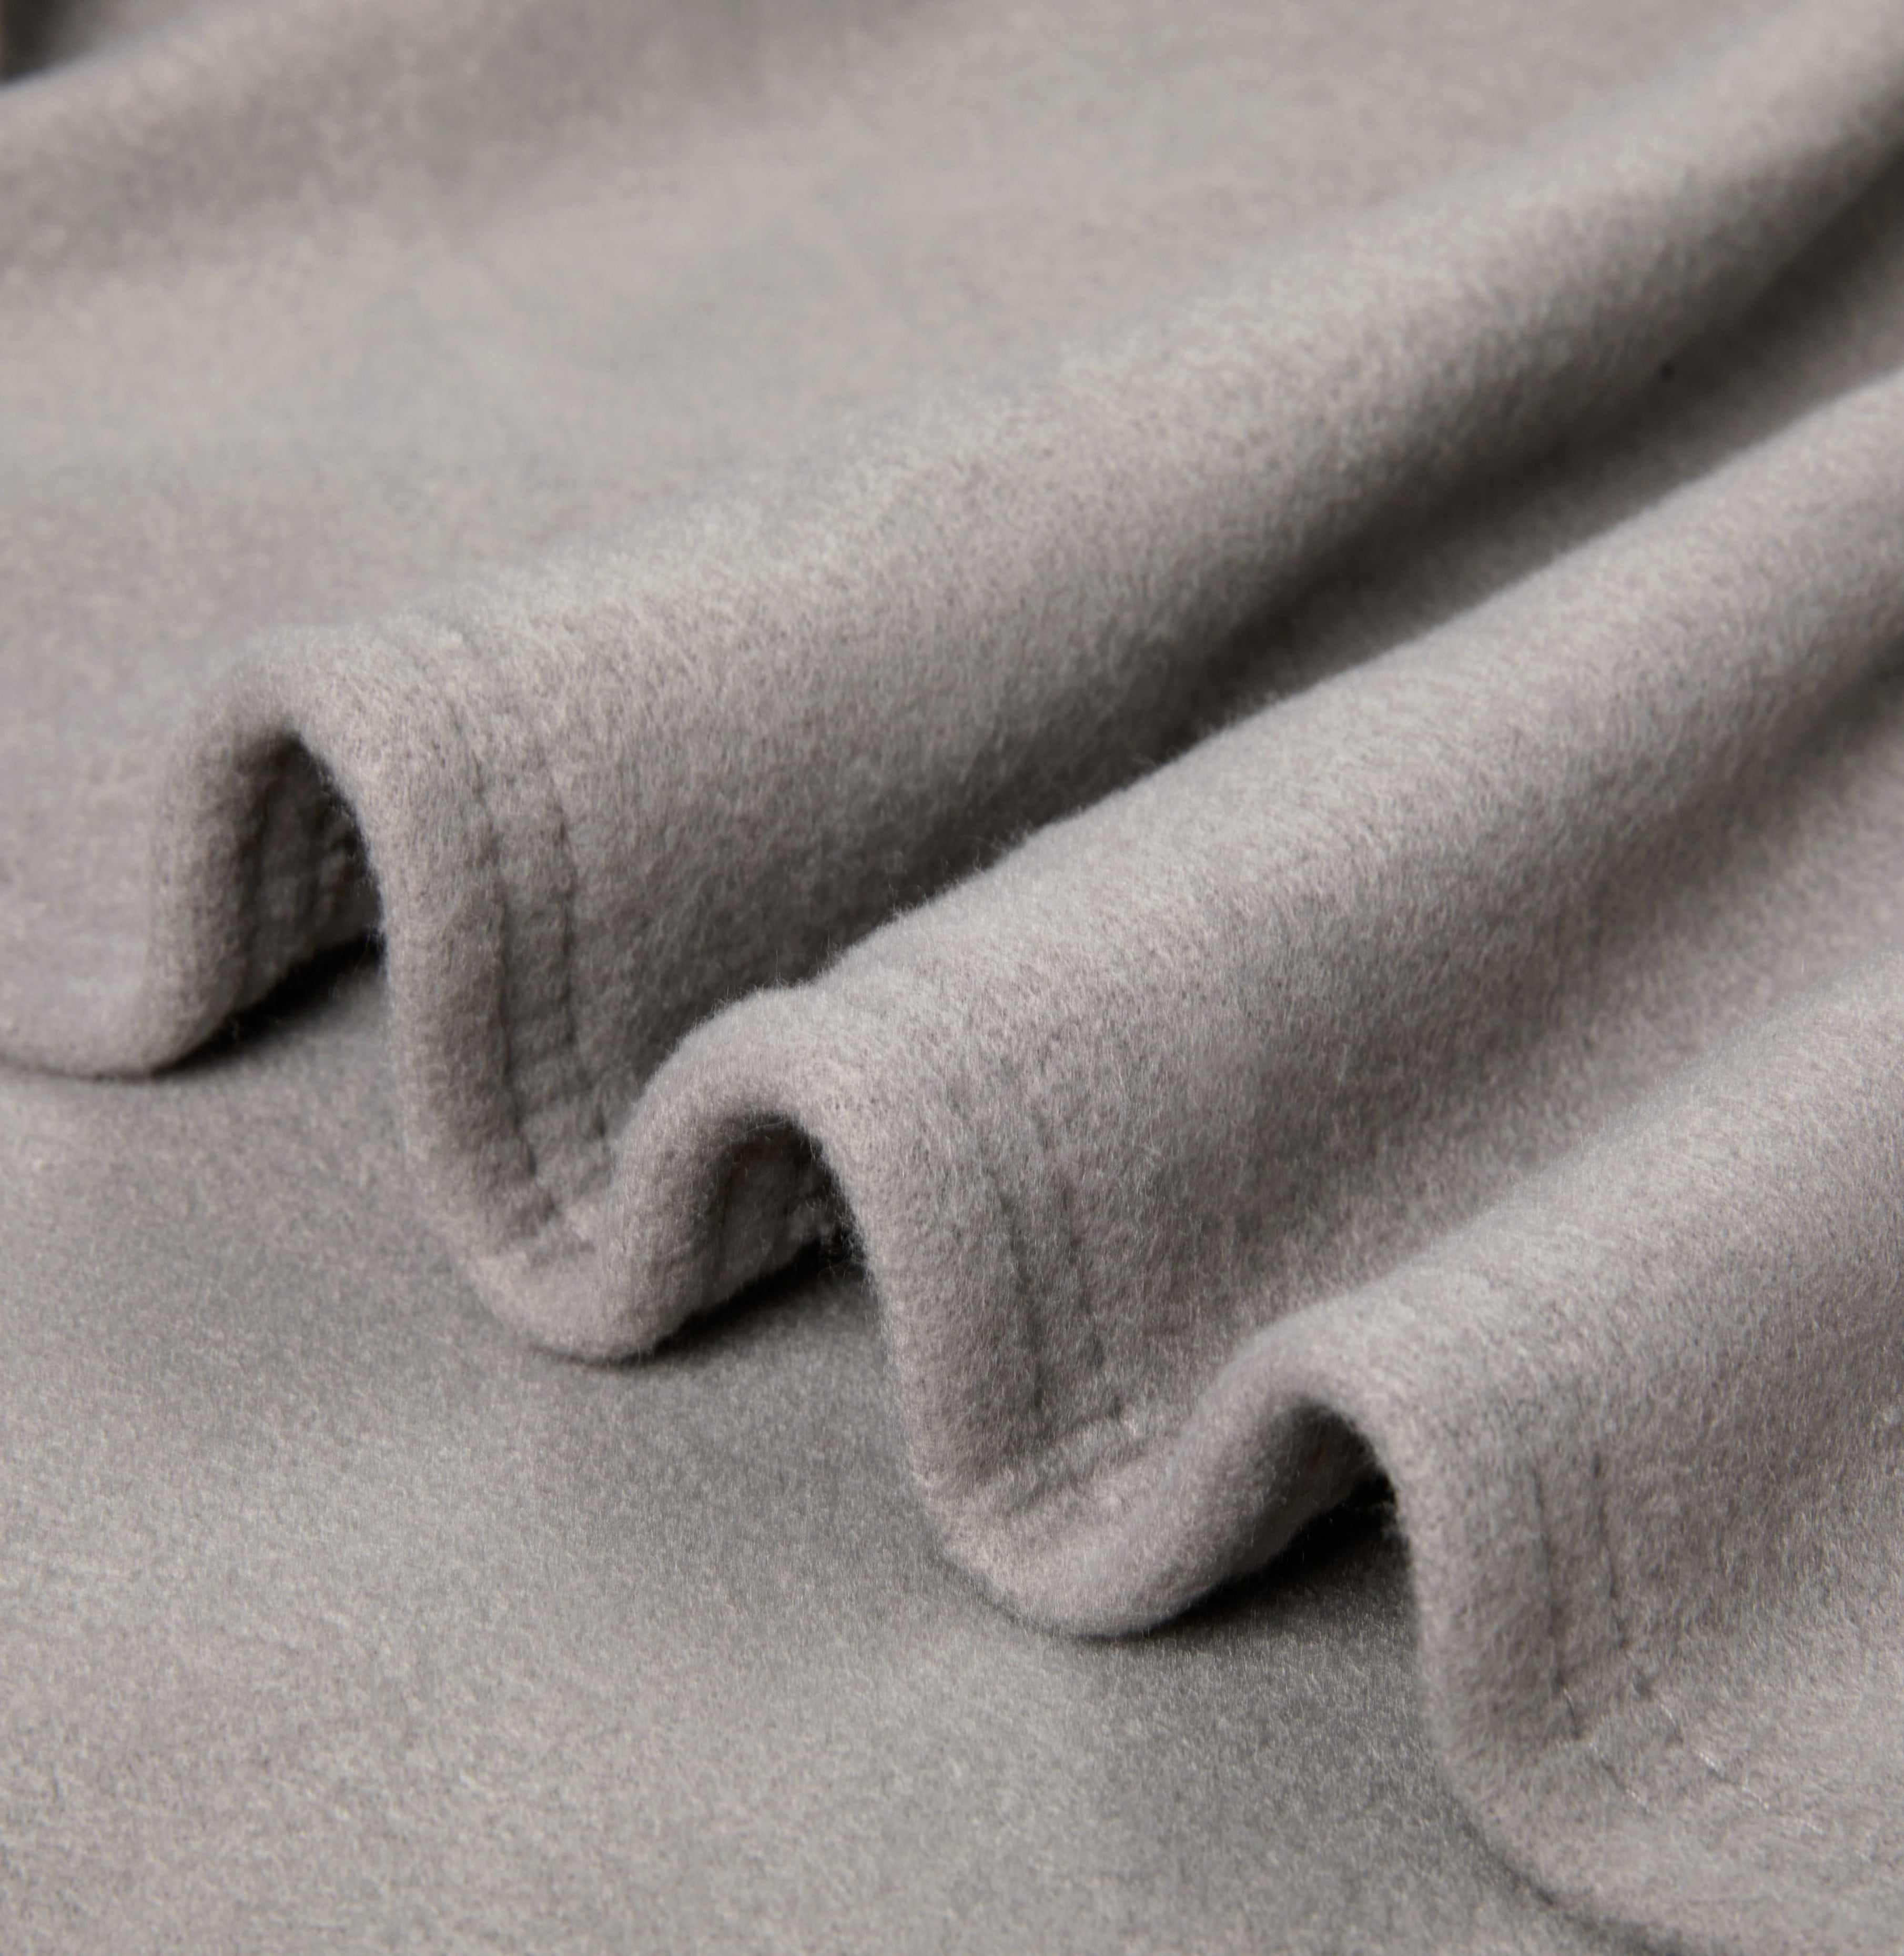 Stalwart Gray 30-in x 35-in Fleece/Peva Heated Blanket Polyester | 75-BPSH-2009